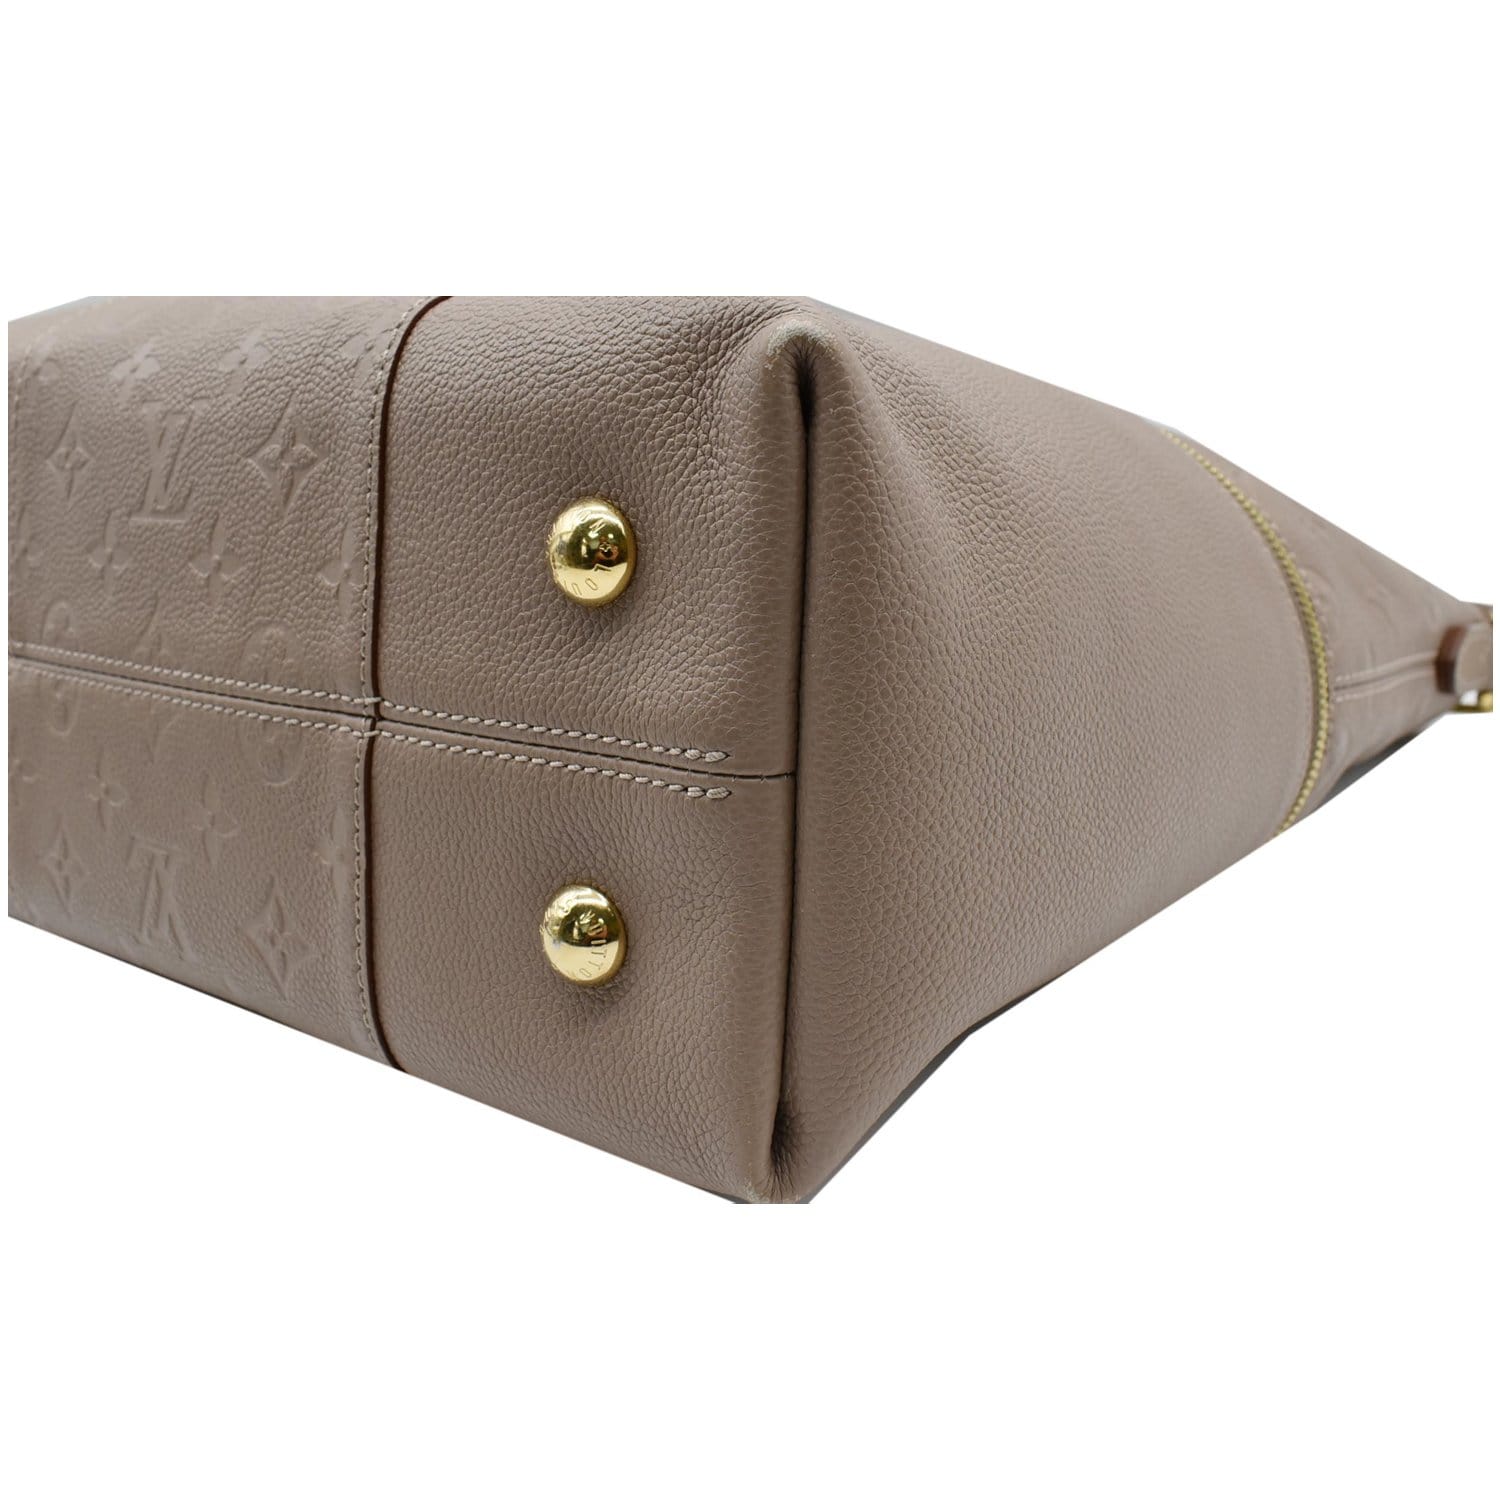 Louis Vuitton Taupe Glace Monogram Empreinte Leather Melie Bag